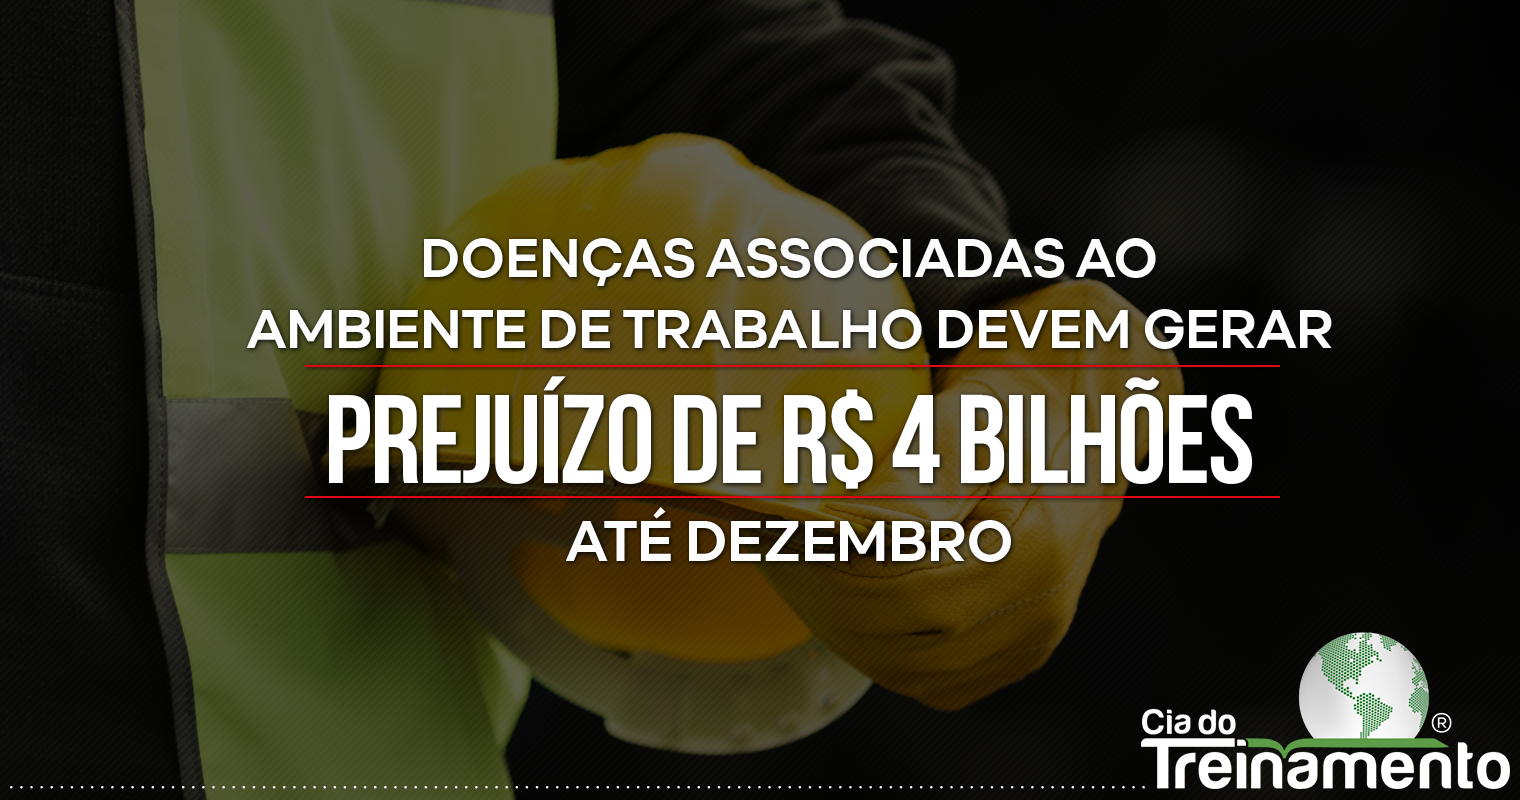 Doenças associadas ao ambiente de trabalho devem gerar prejuízo de R$4 bilhões até dezembro